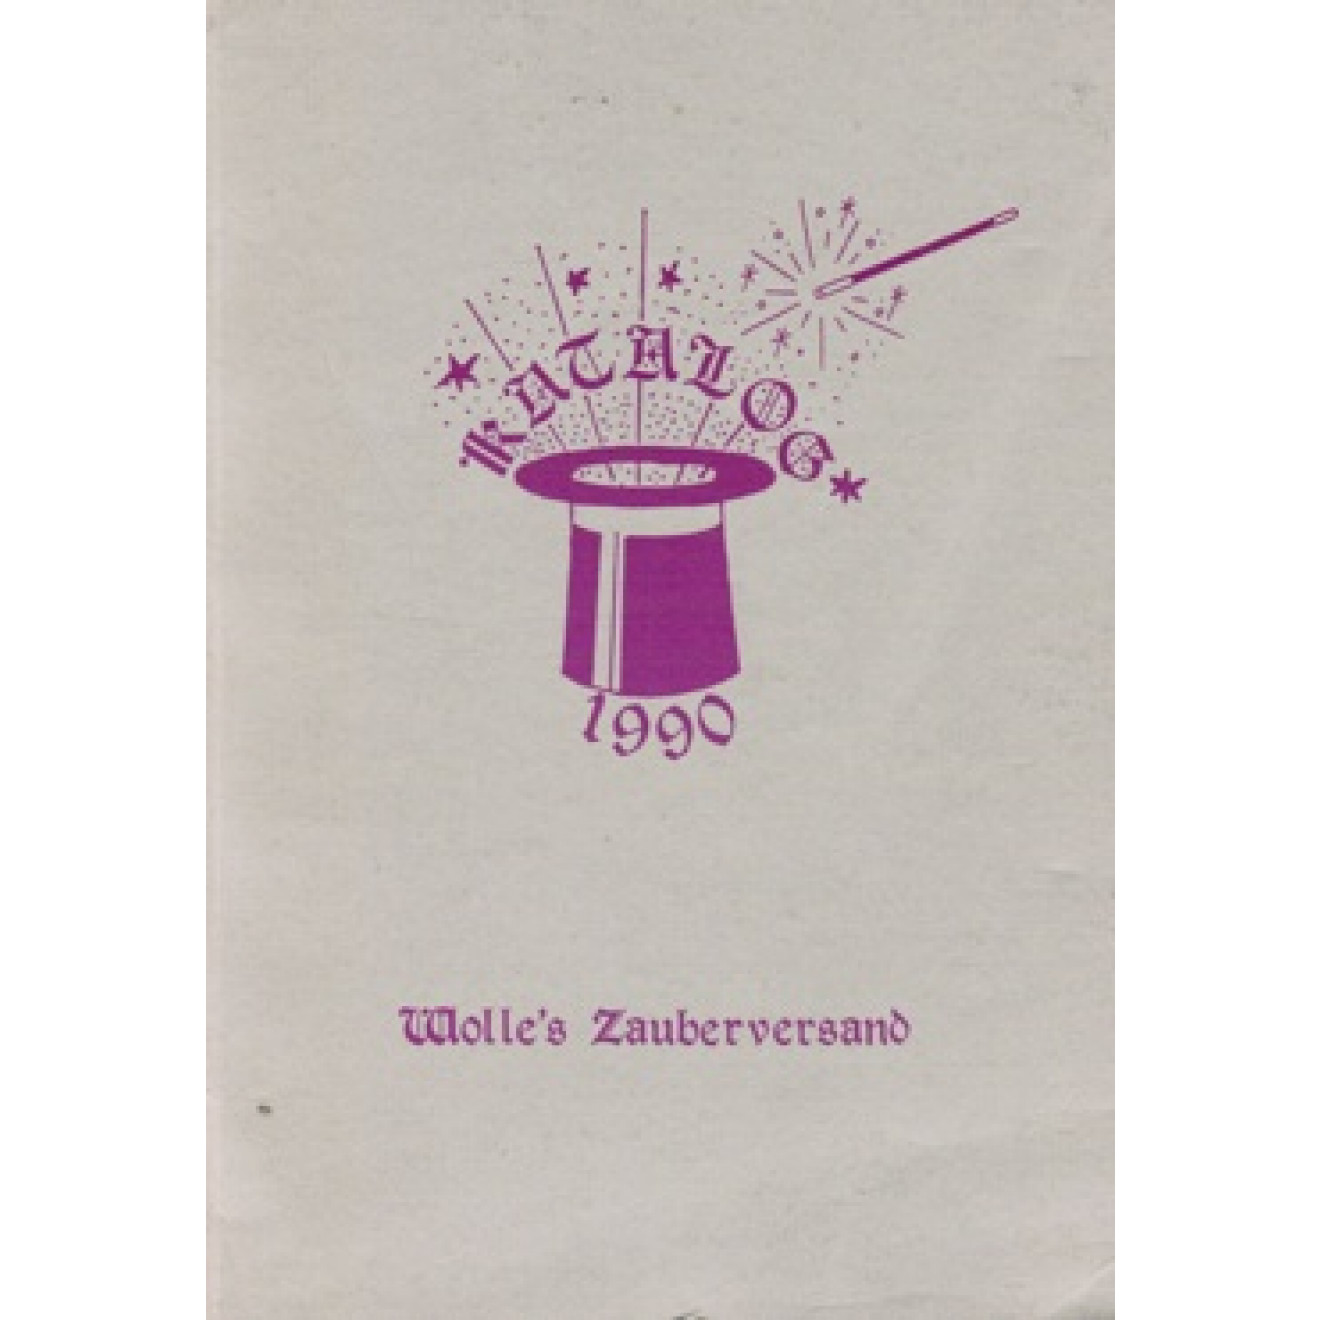 Wolle's Zauberversand Katalog 1990